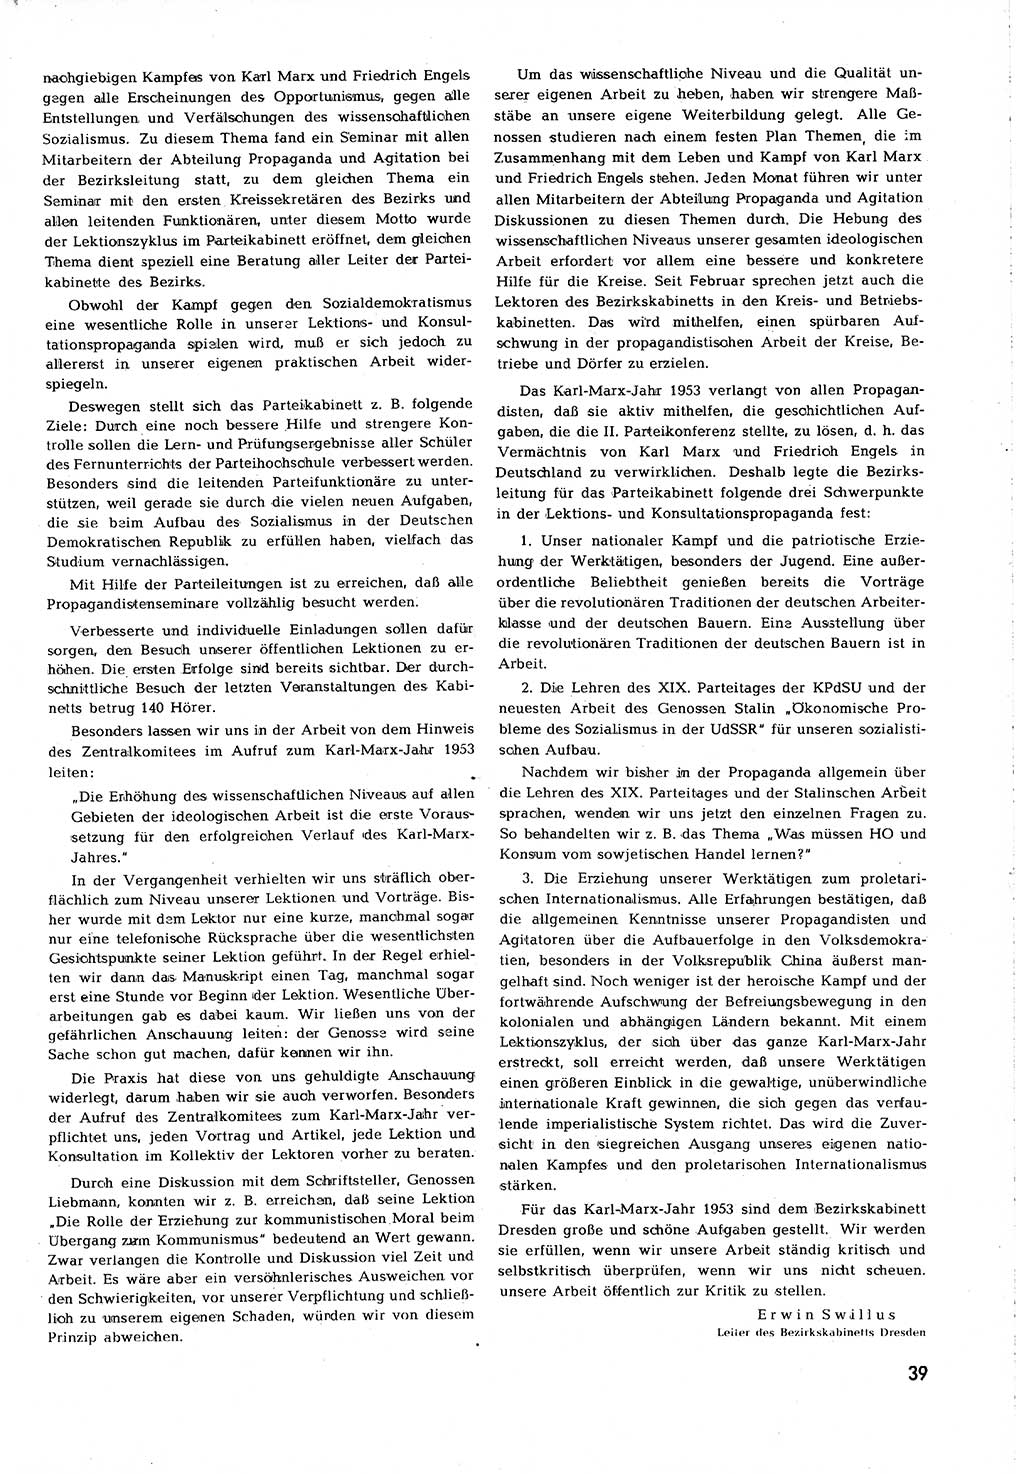 Neuer Weg (NW), Organ des Zentralkomitees (ZK) [Sozialistische Einheitspartei Deutschlands (SED)] für alle Parteiarbeiter, 8. Jahrgang [Deutsche Demokratische Republik (DDR)] 1953, Heft 5/39 (NW ZK SED DDR 1953, H. 5/39)